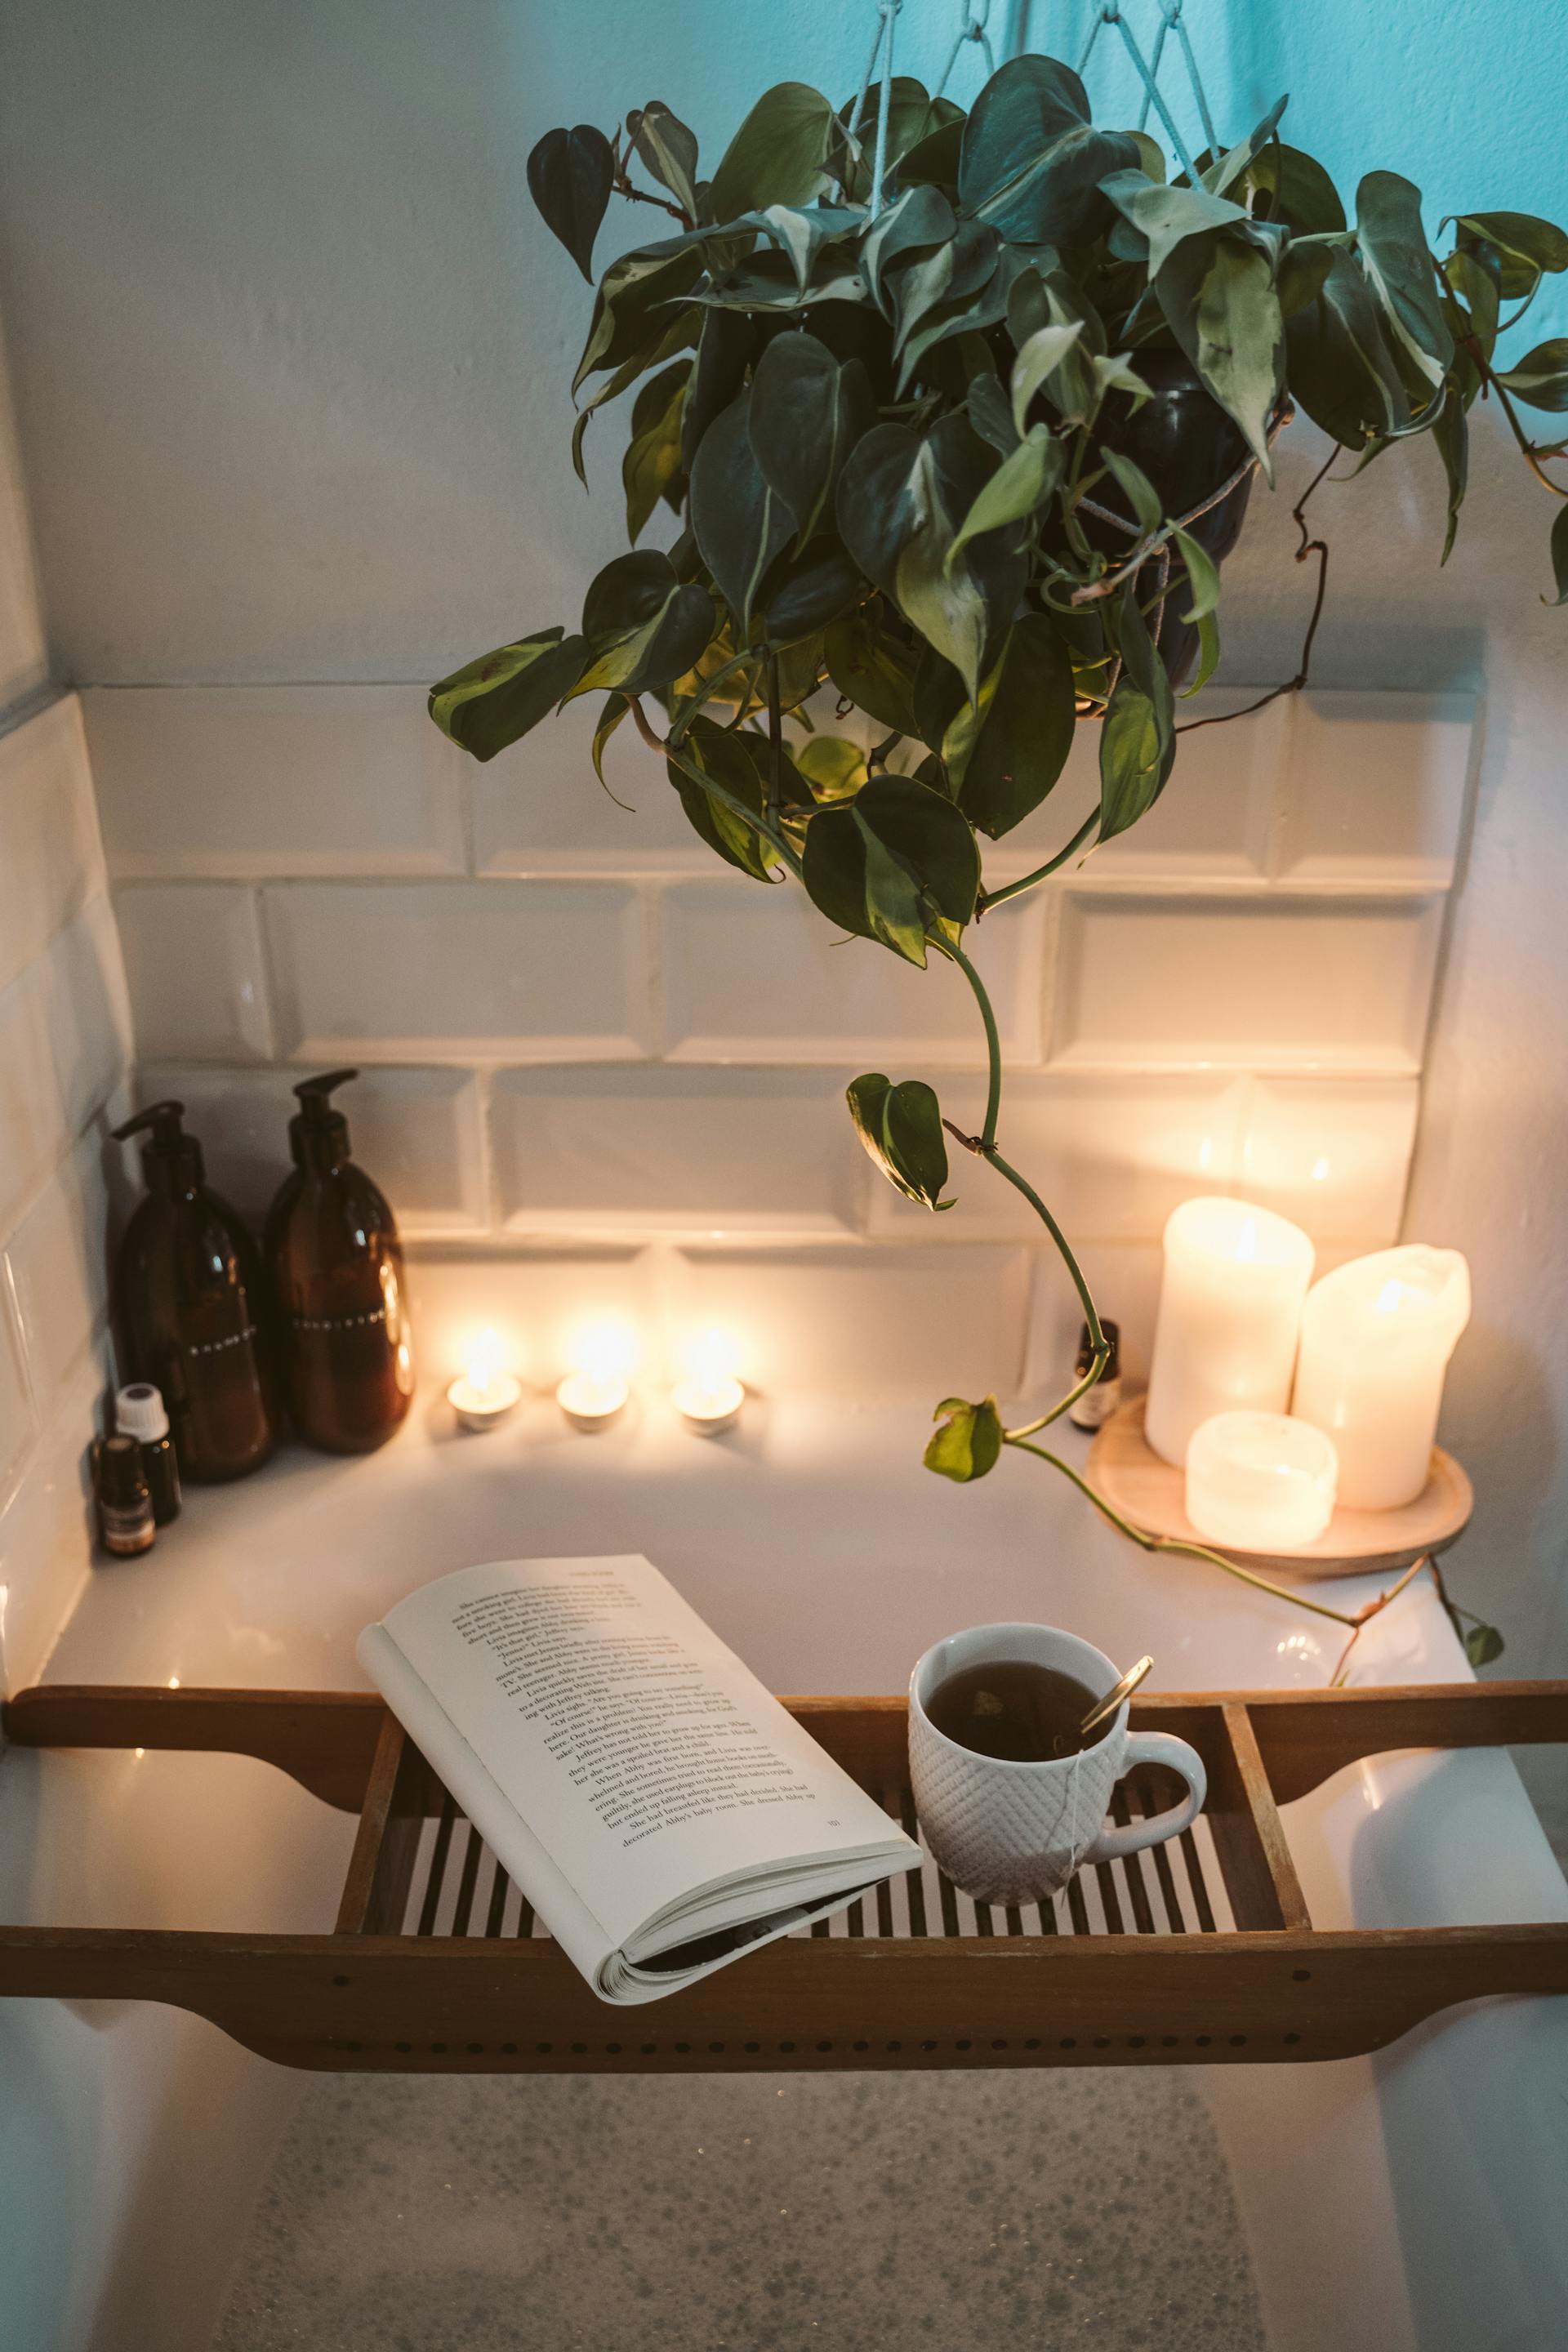 Un bain moussant avec du thé et un livre | Source : Pexels